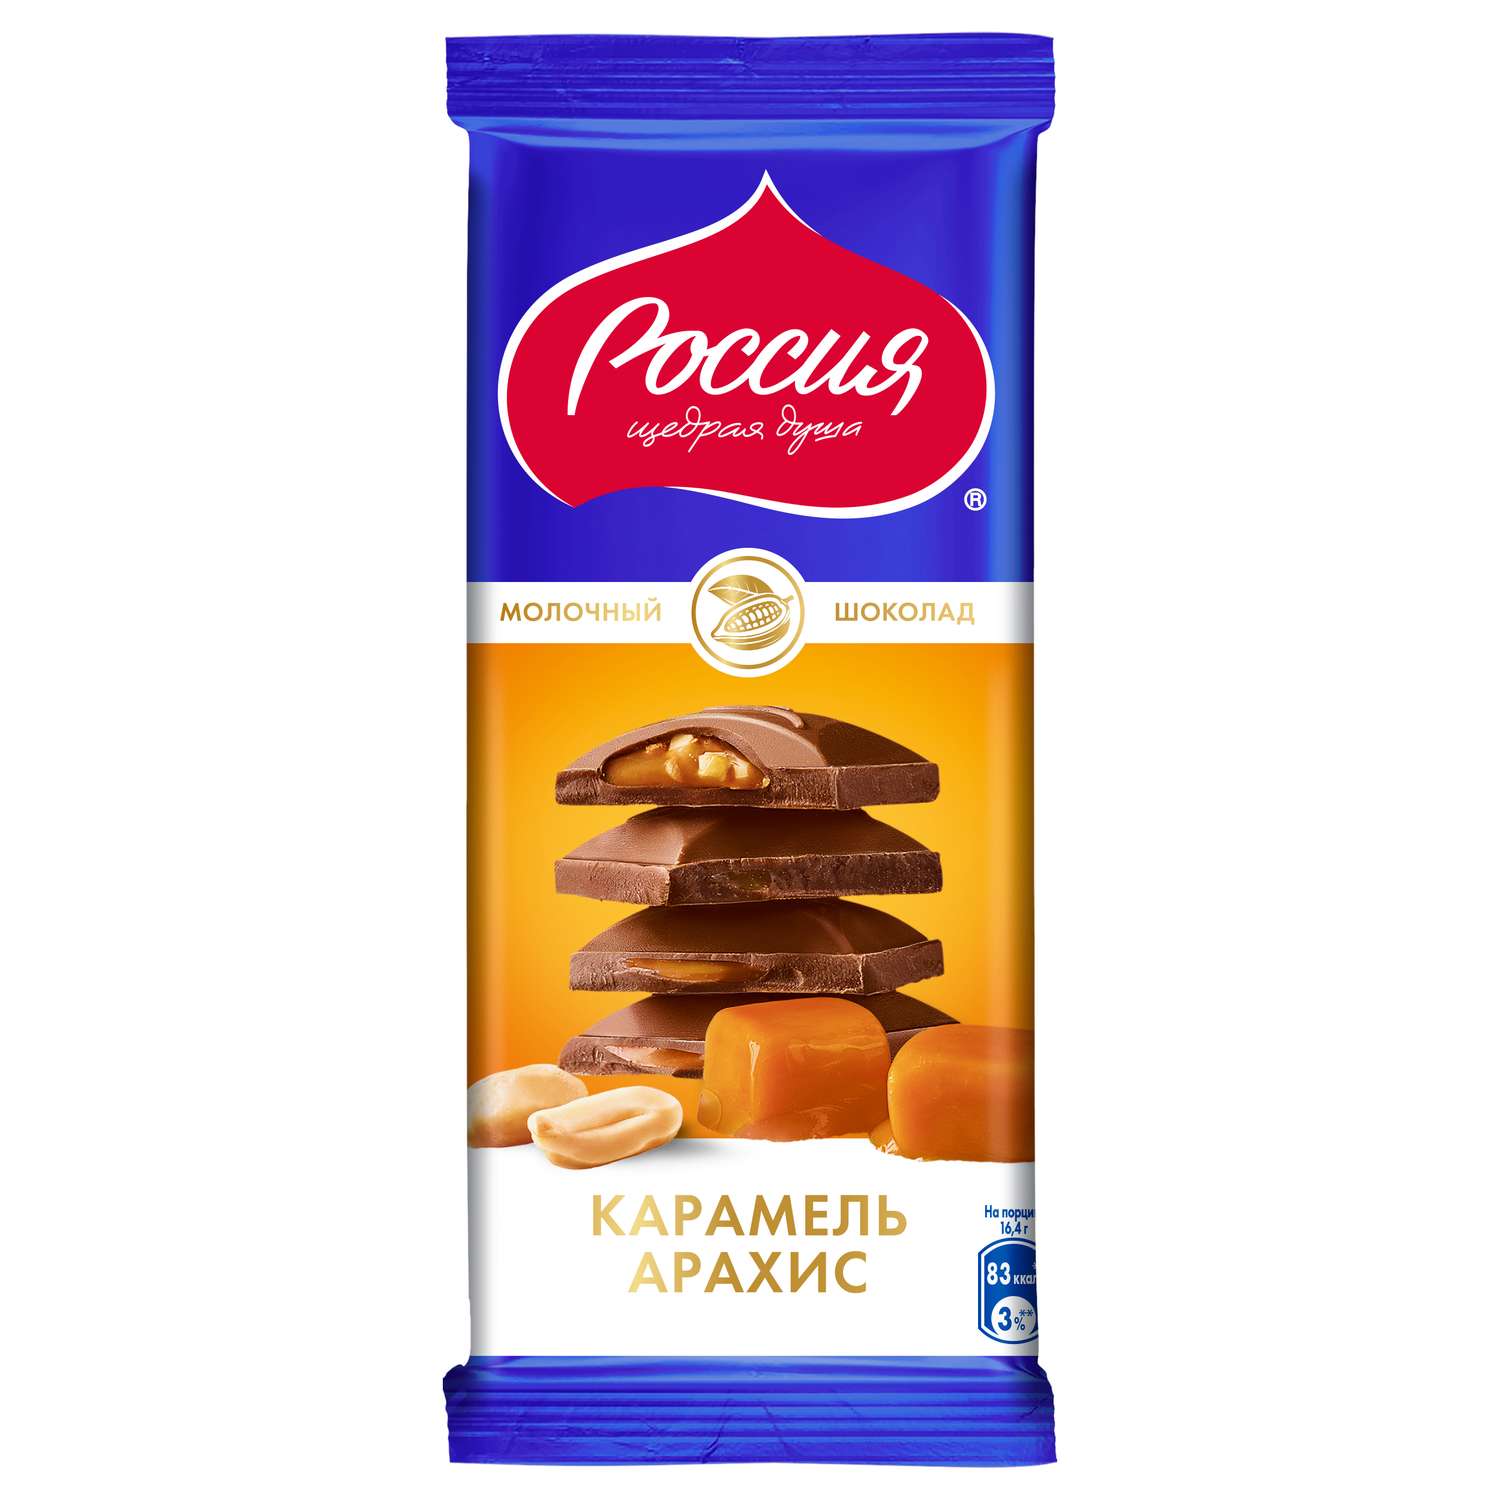 Шоколад Россия-щедрая душа! молочный карамель-арахис 82г - фото 1